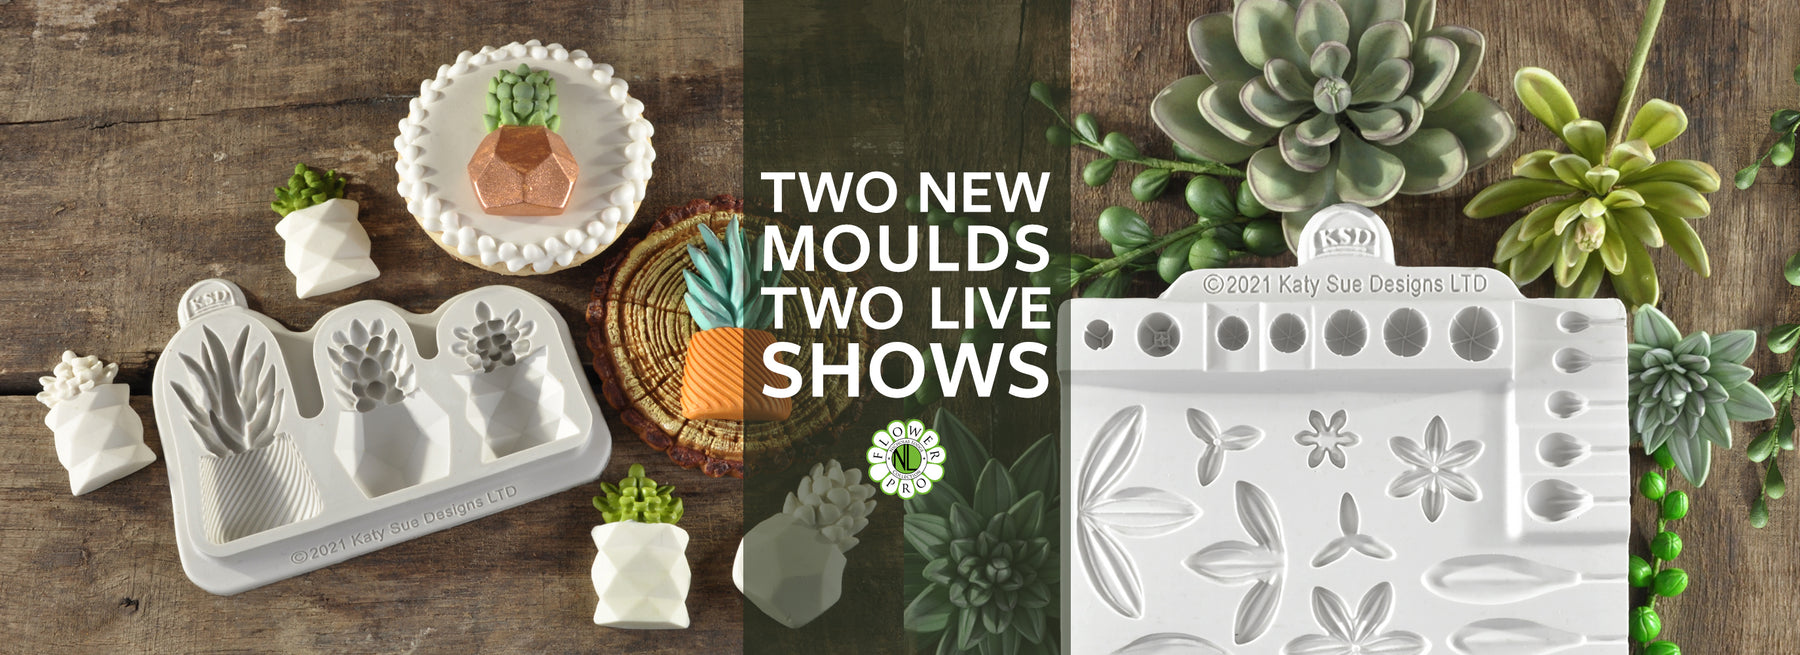 Succulents Moulds Launch Show